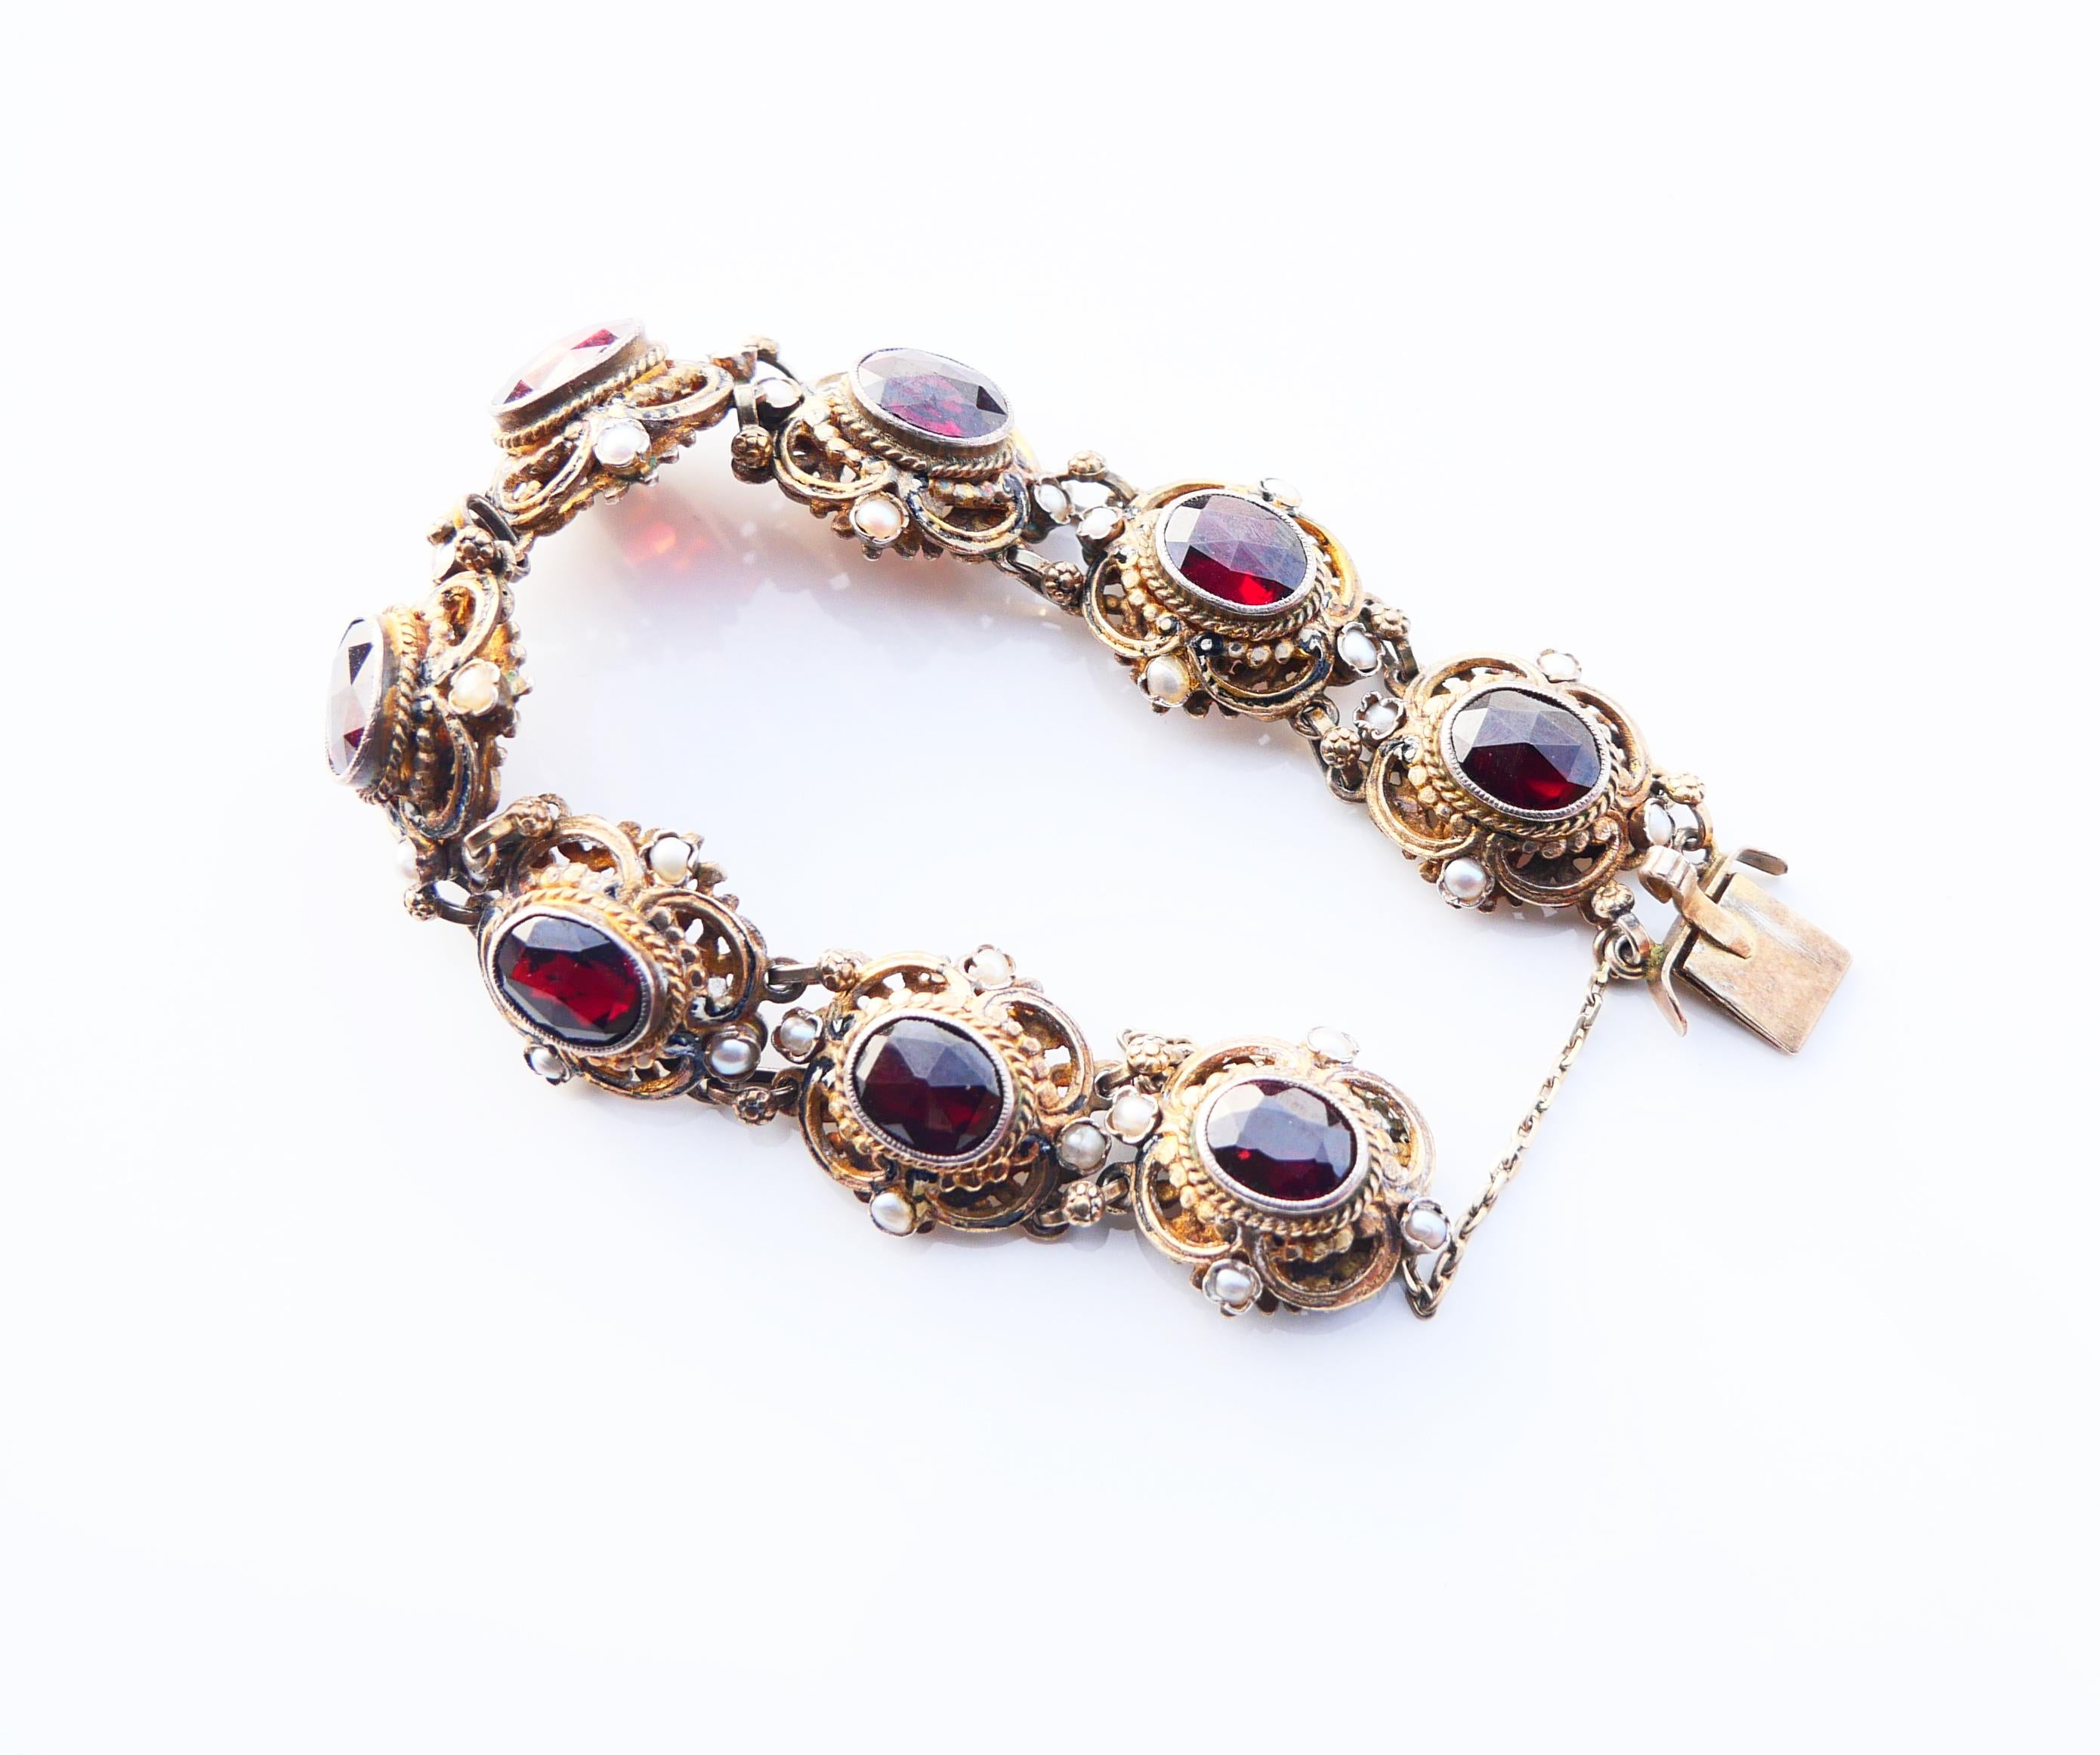 Renaissance Revival Antique Austrian Bohemian Bracelet Garnets Seed Pearls Enamel / 18cm / 34gr For Sale